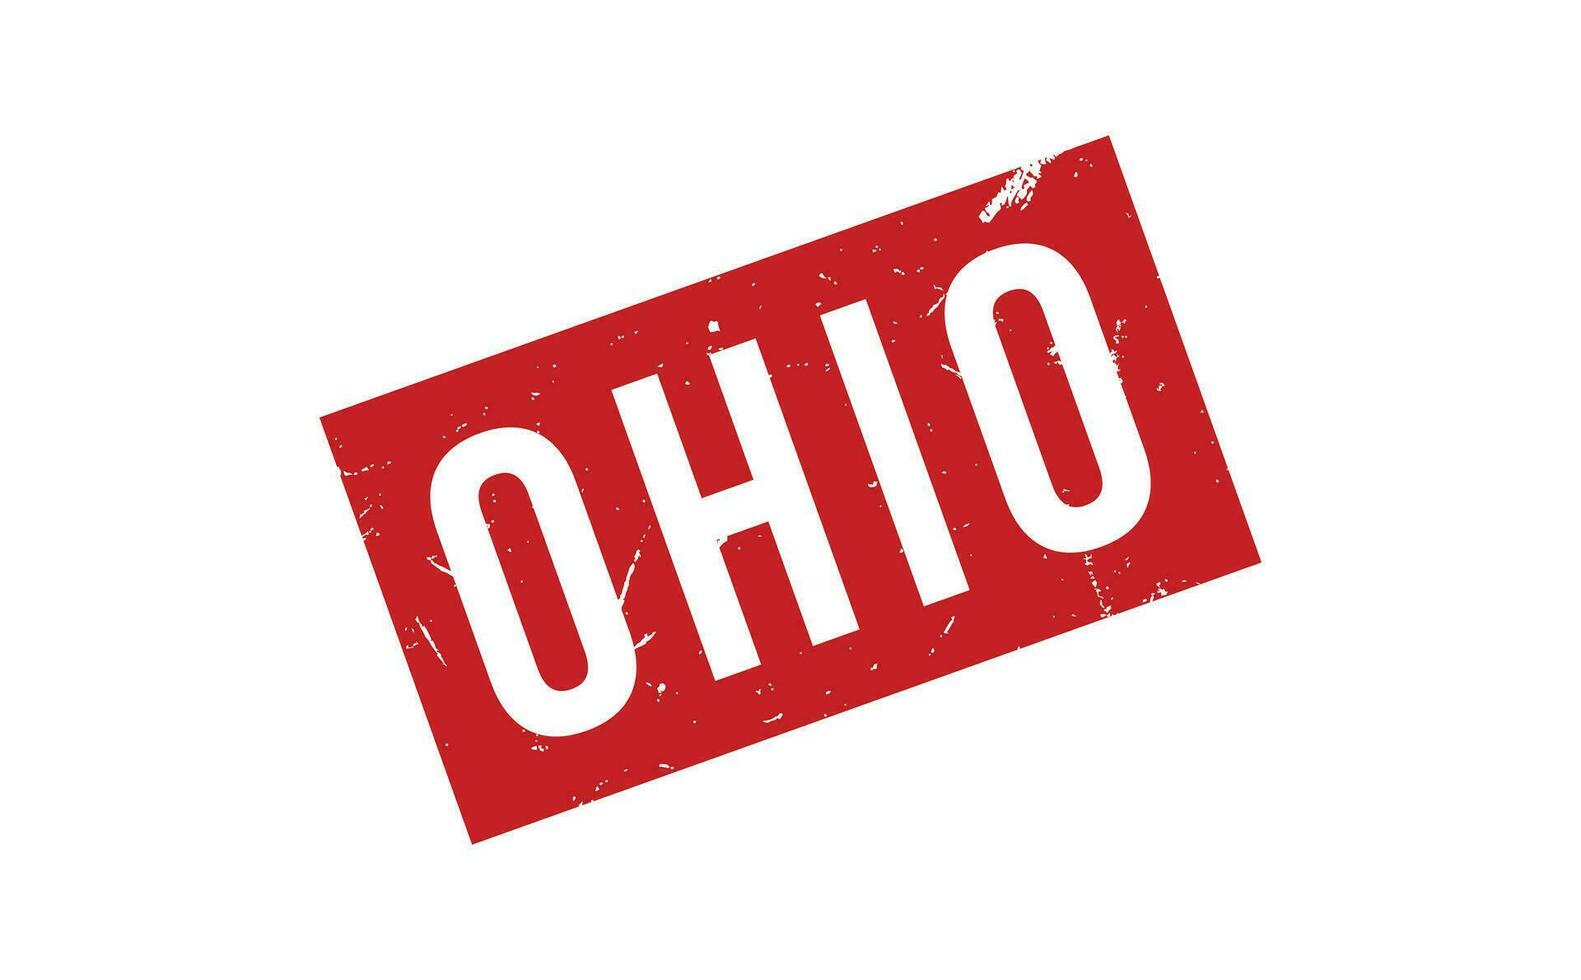 Ohio caucho sello sello vector